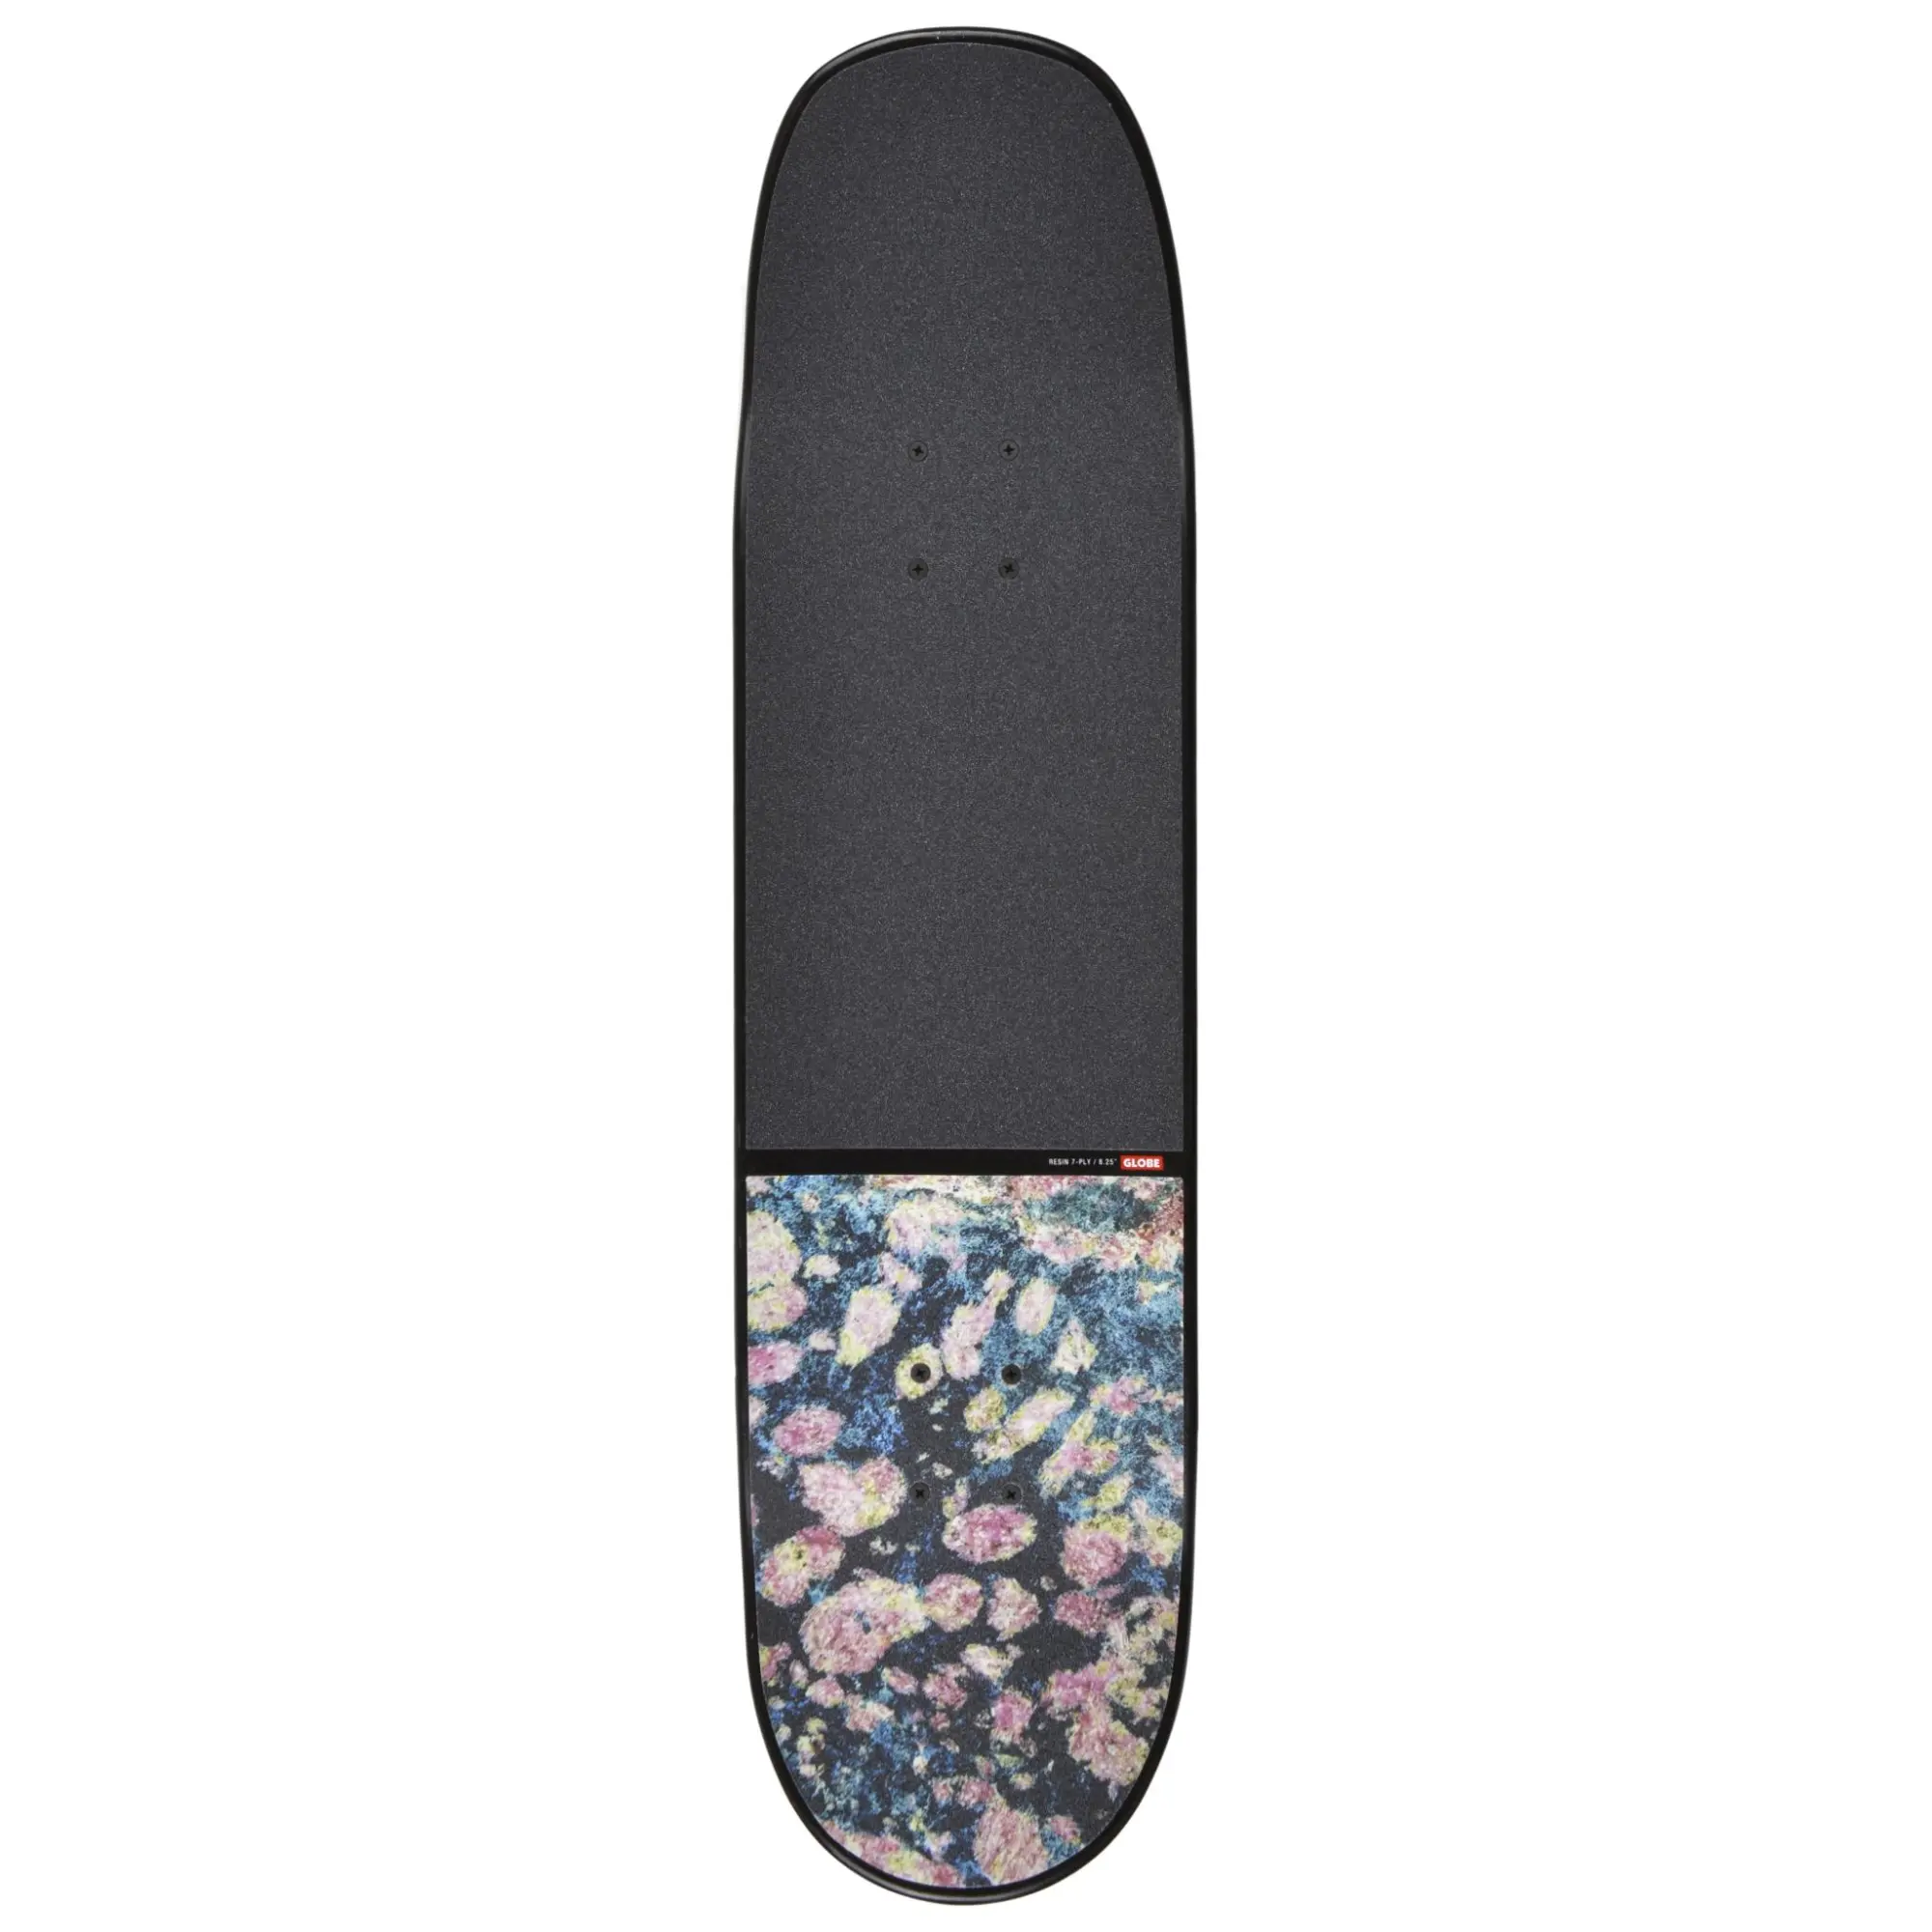 Skateboard Globe Completo Chisel Black 8.25